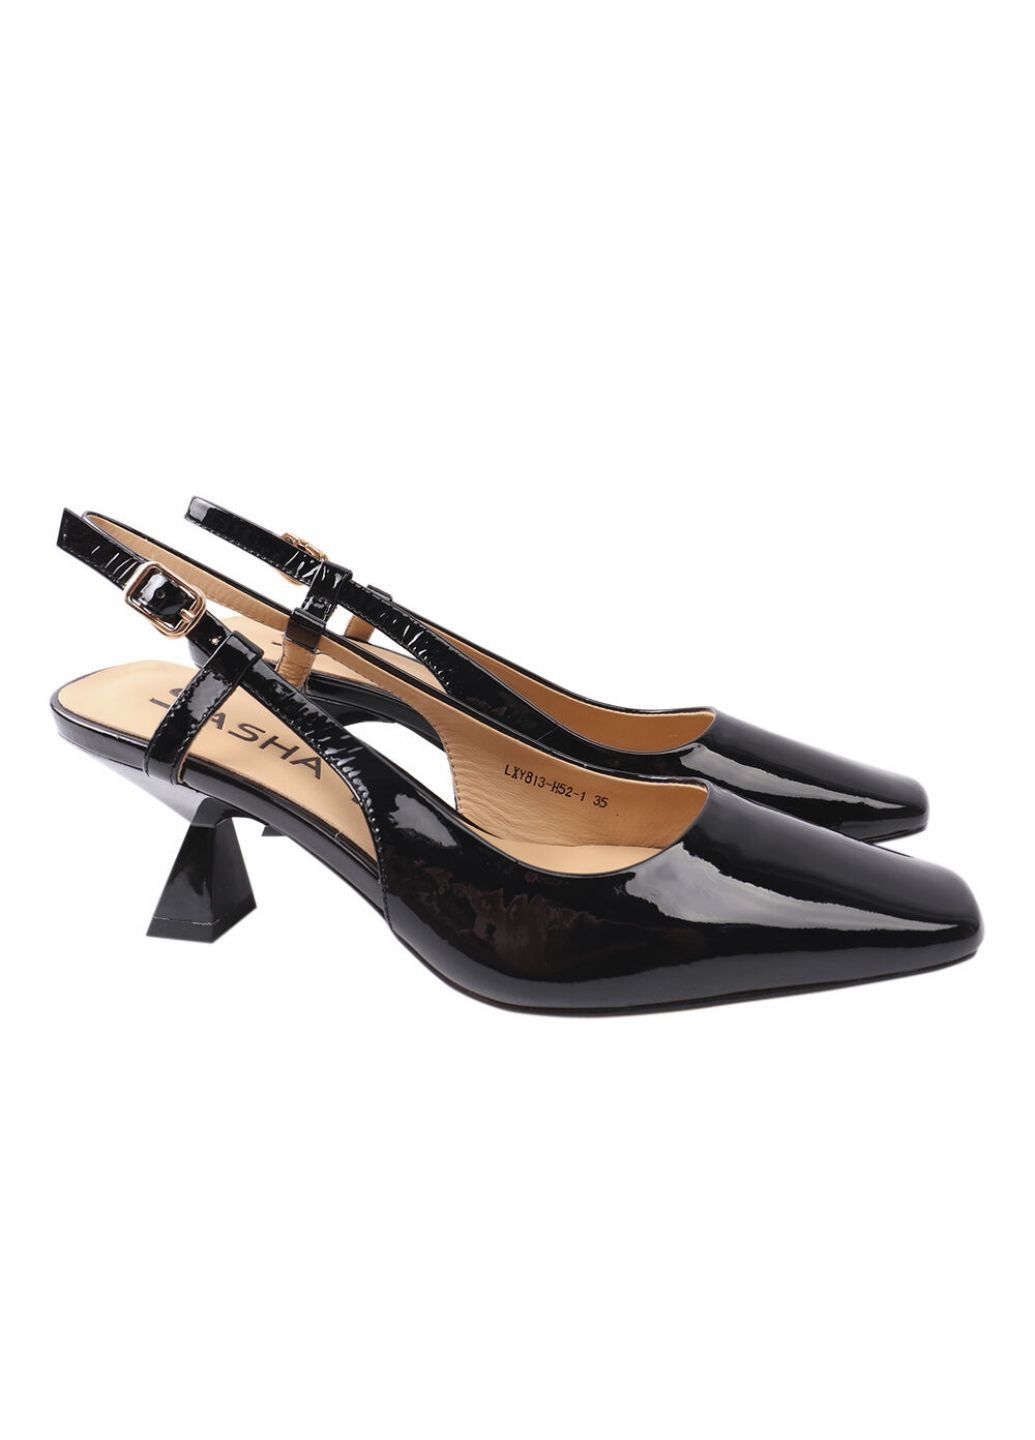 Туфли женские из натуральной лаковой кожи, на низком каблуке, с открытой пятой, цвет черный, Sasha Fabiani